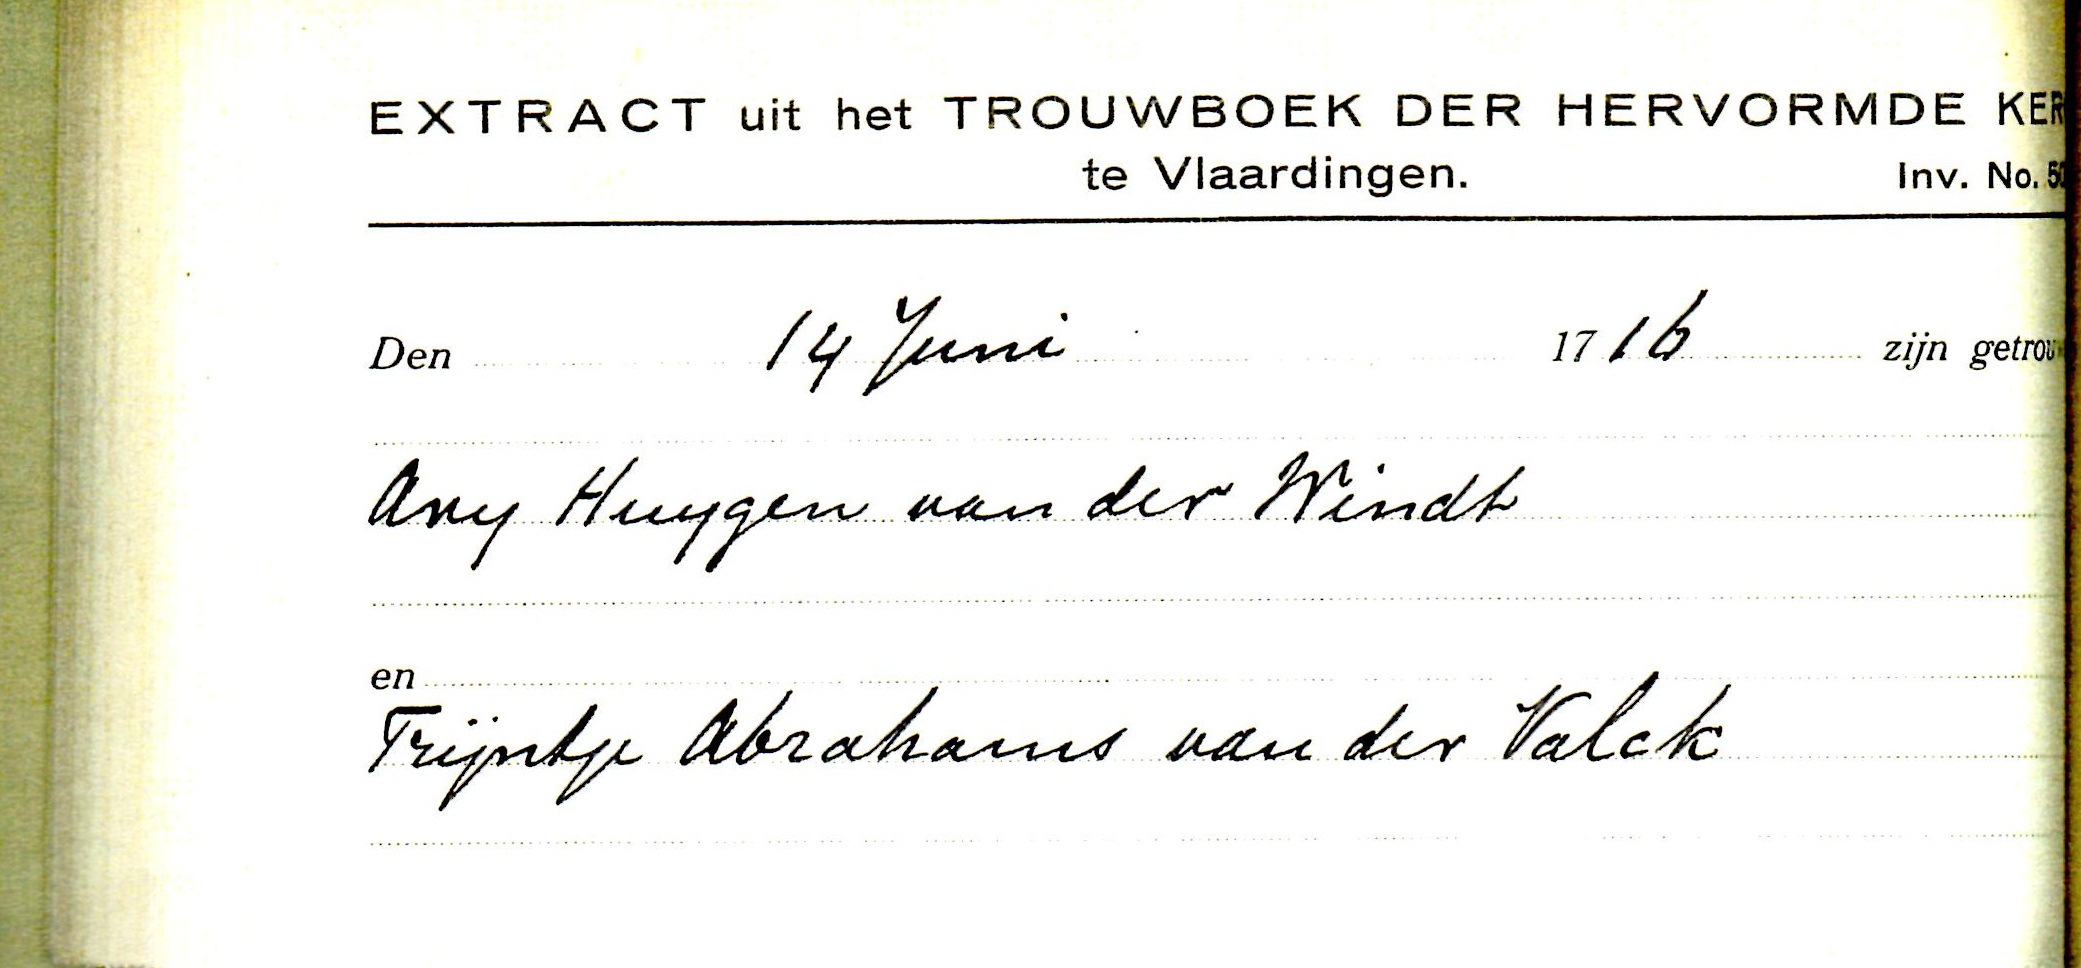 1716-06-14 Extract Trouwboek Arij Huijgensz van der Windt en Trijntje Abrahamsd van der Valck